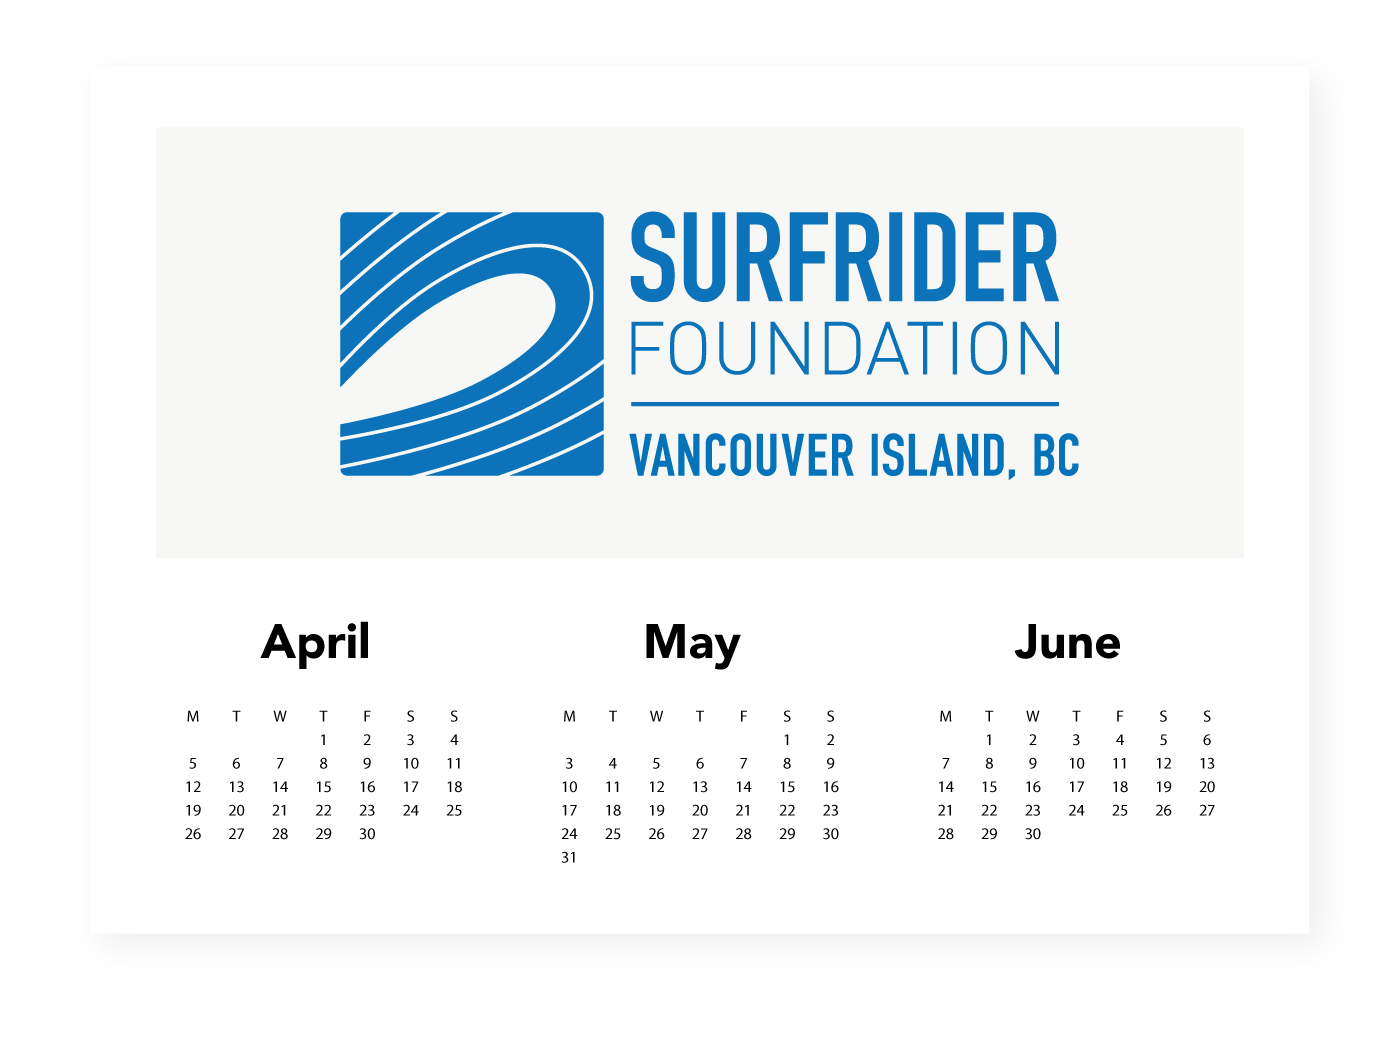 April–June: Surfrider Foundation